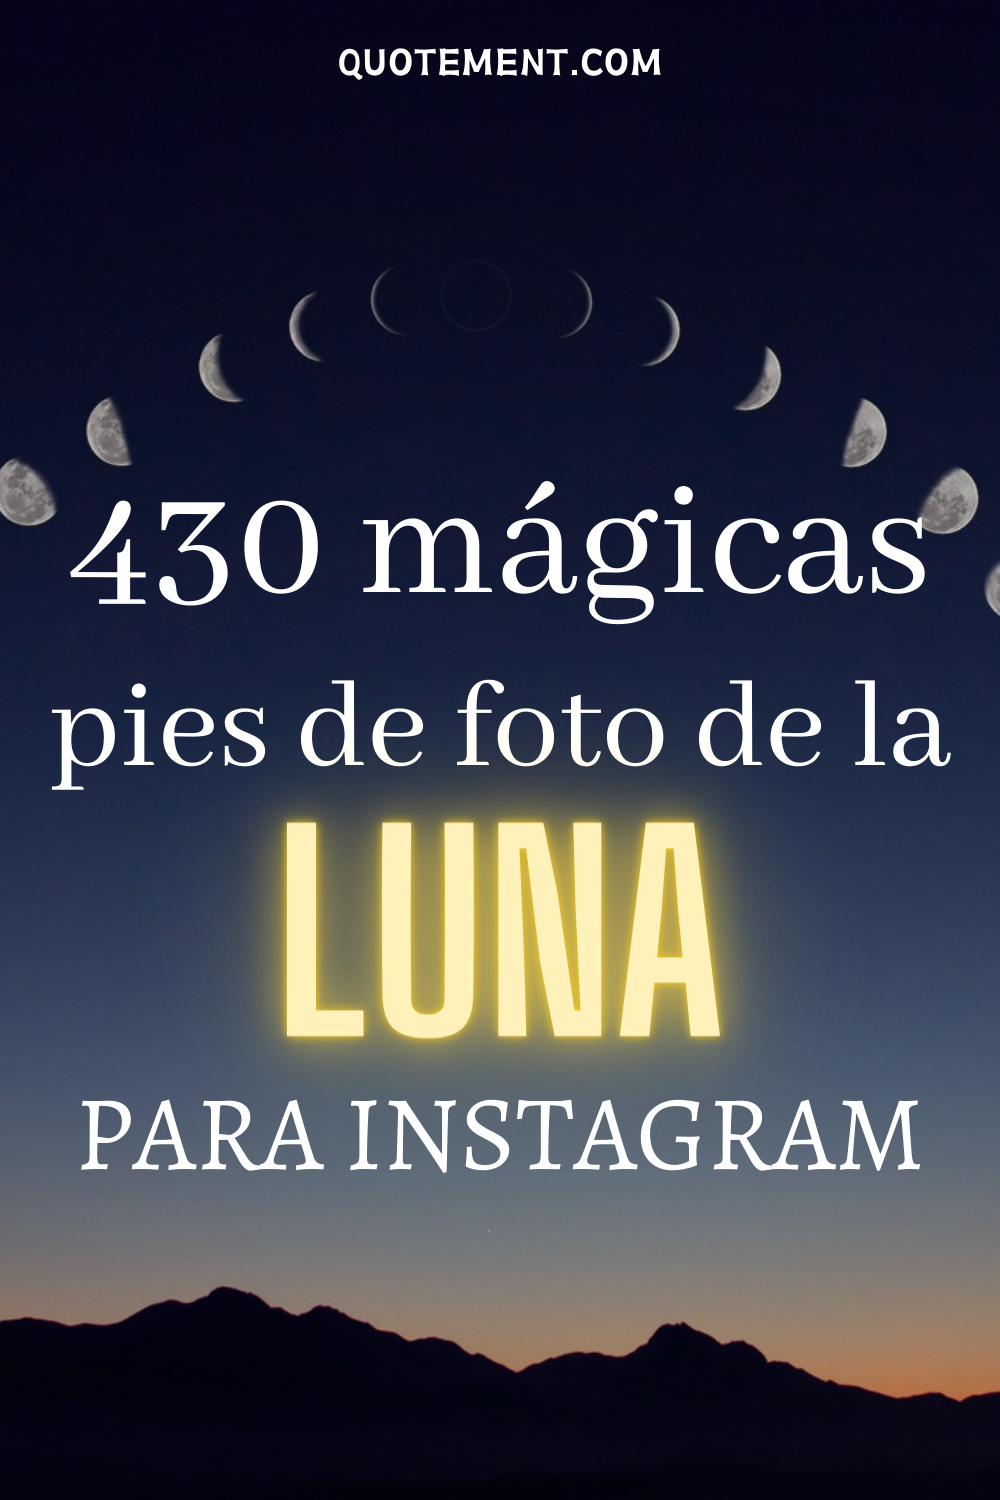 430 bonitos pies de foto de la luna para un post mágico en Instagram